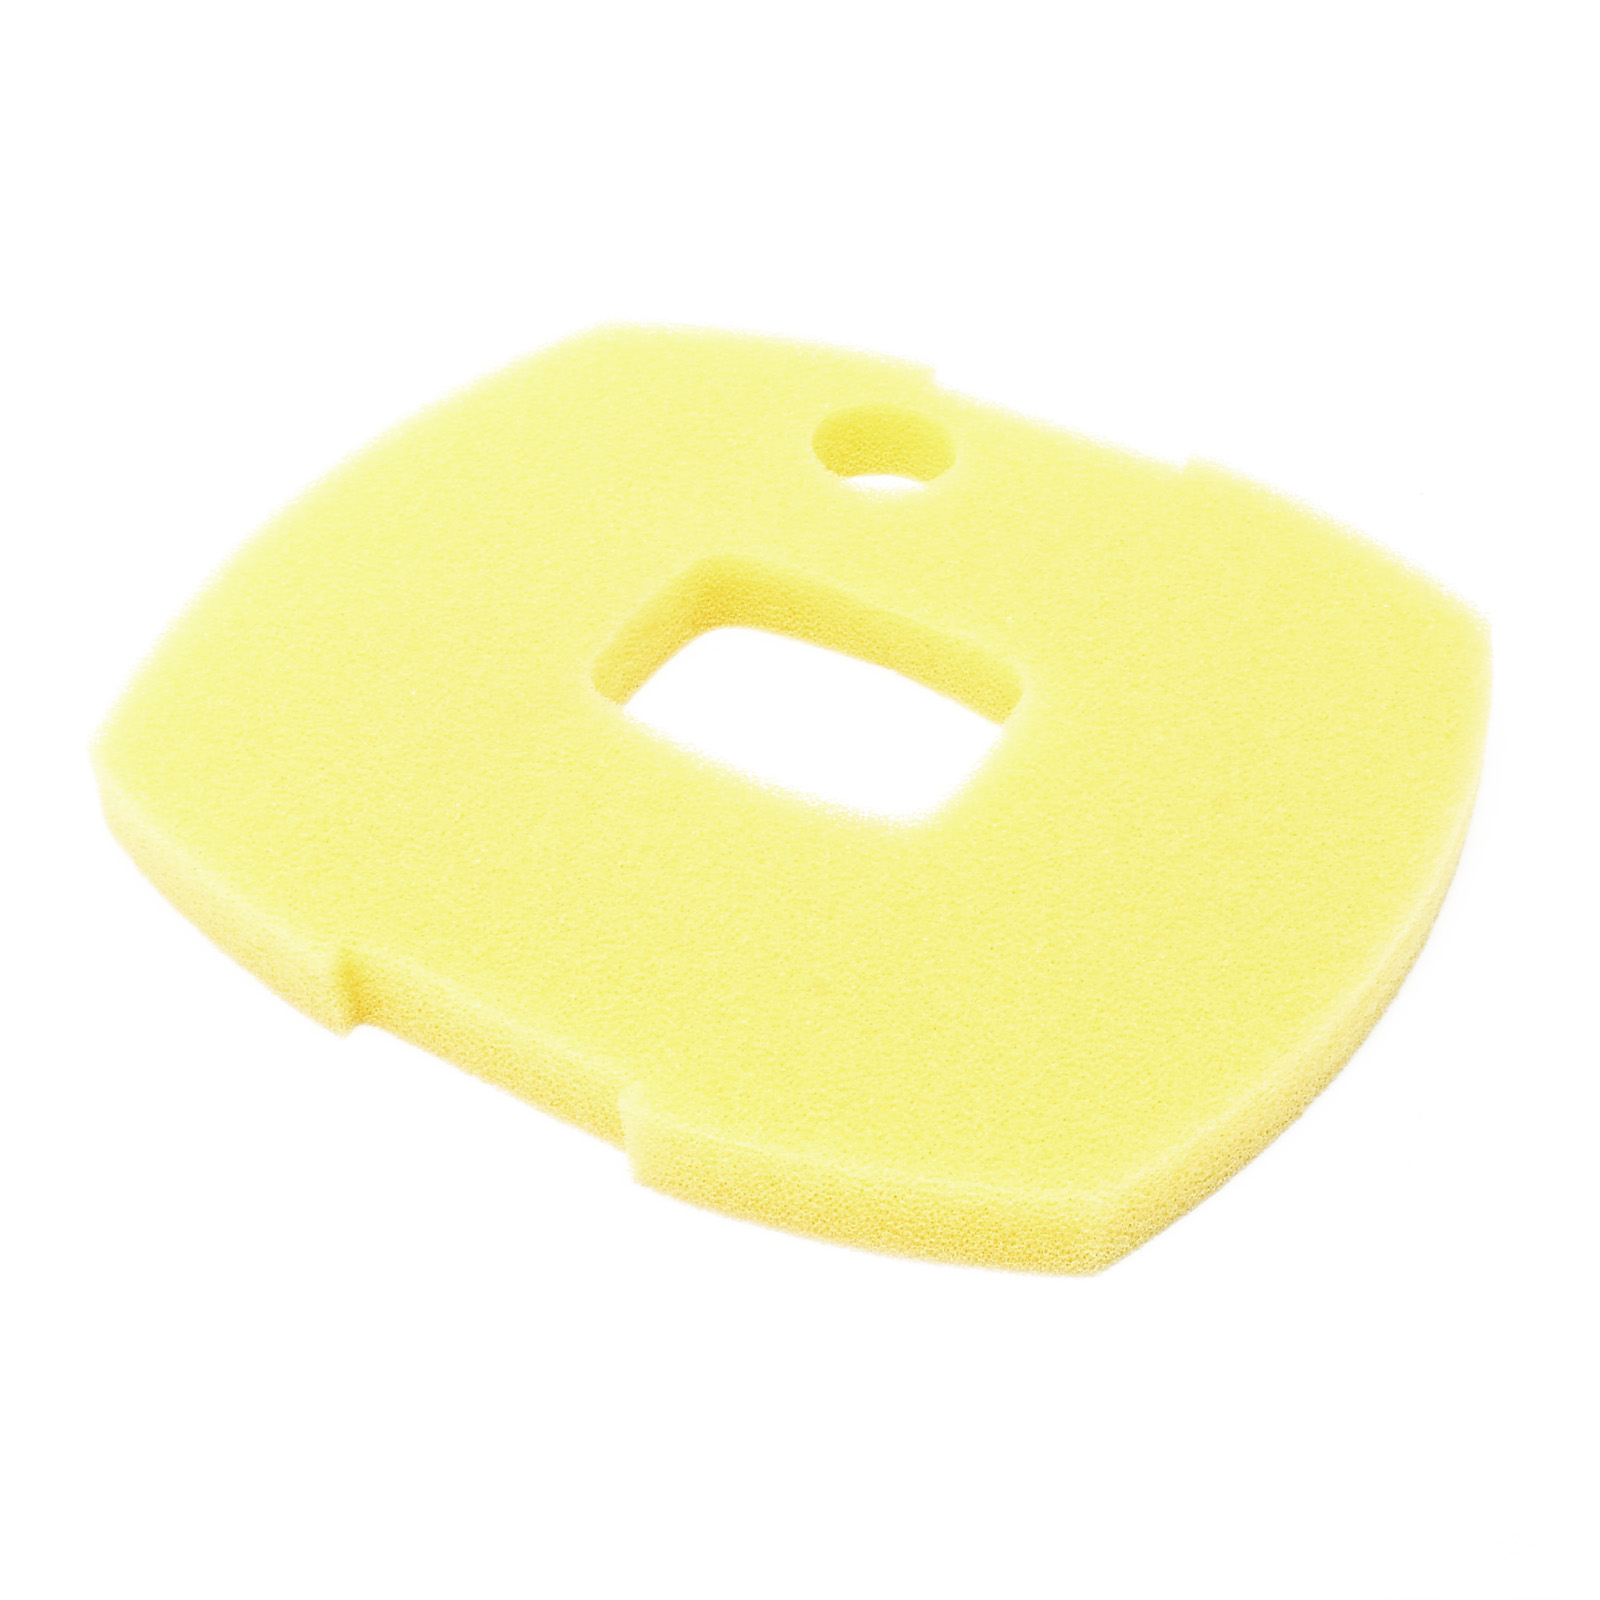 SunSun CUF Filterschwamm gelb 310x275x25mm für feine Filterung